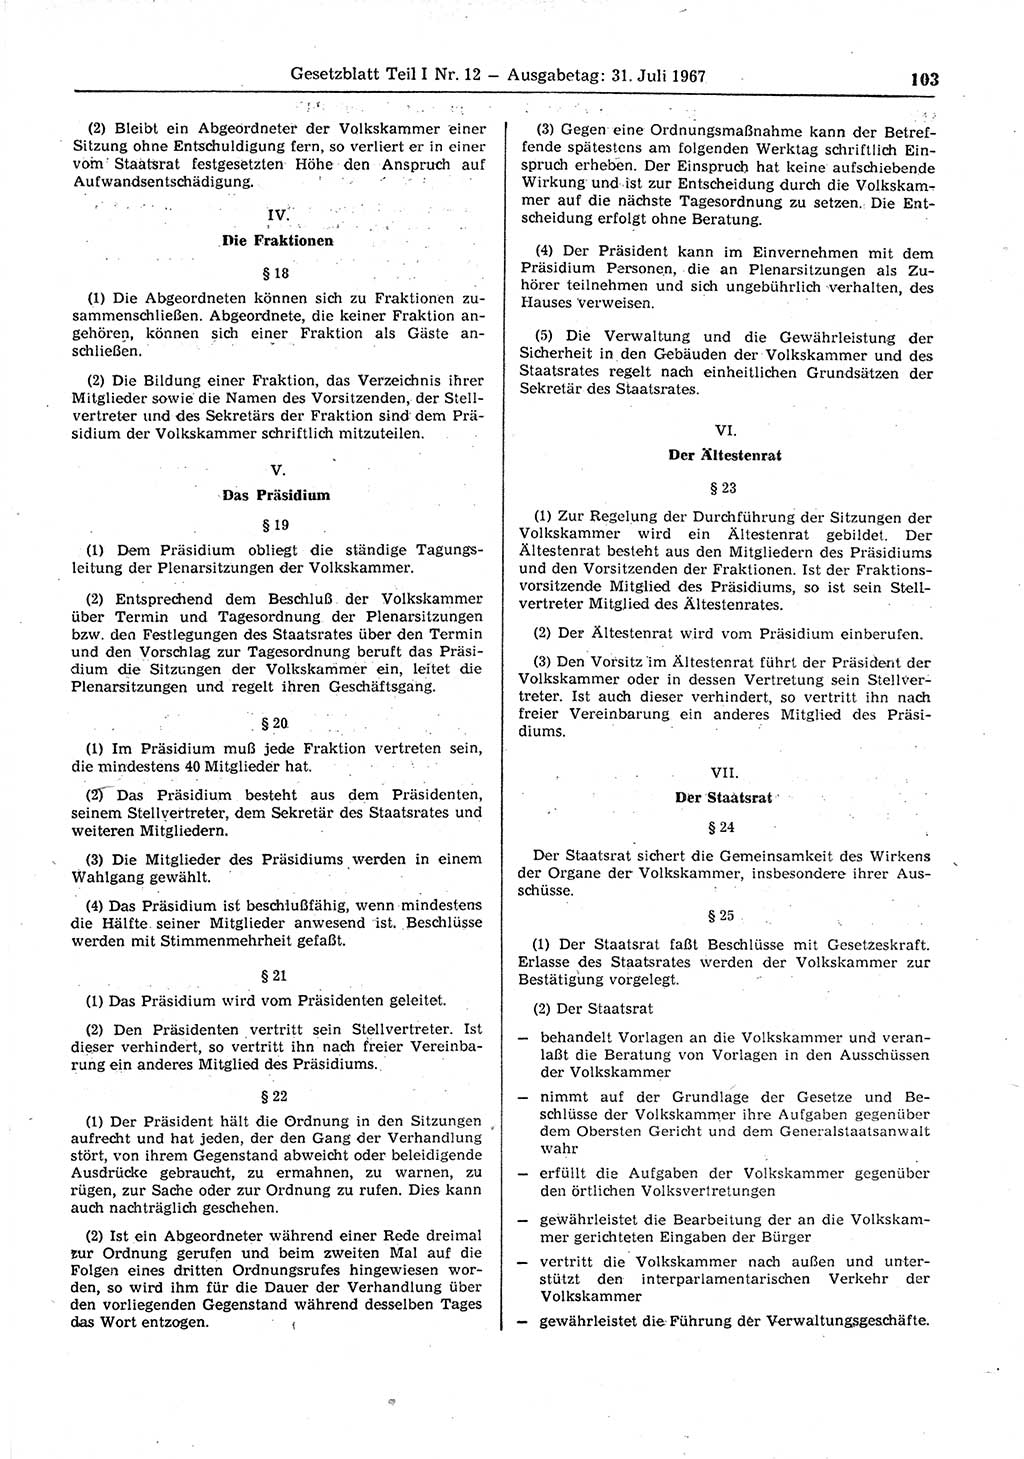 Gesetzblatt (GBl.) der Deutschen Demokratischen Republik (DDR) Teil Ⅰ 1967, Seite 103 (GBl. DDR Ⅰ 1967, S. 103)